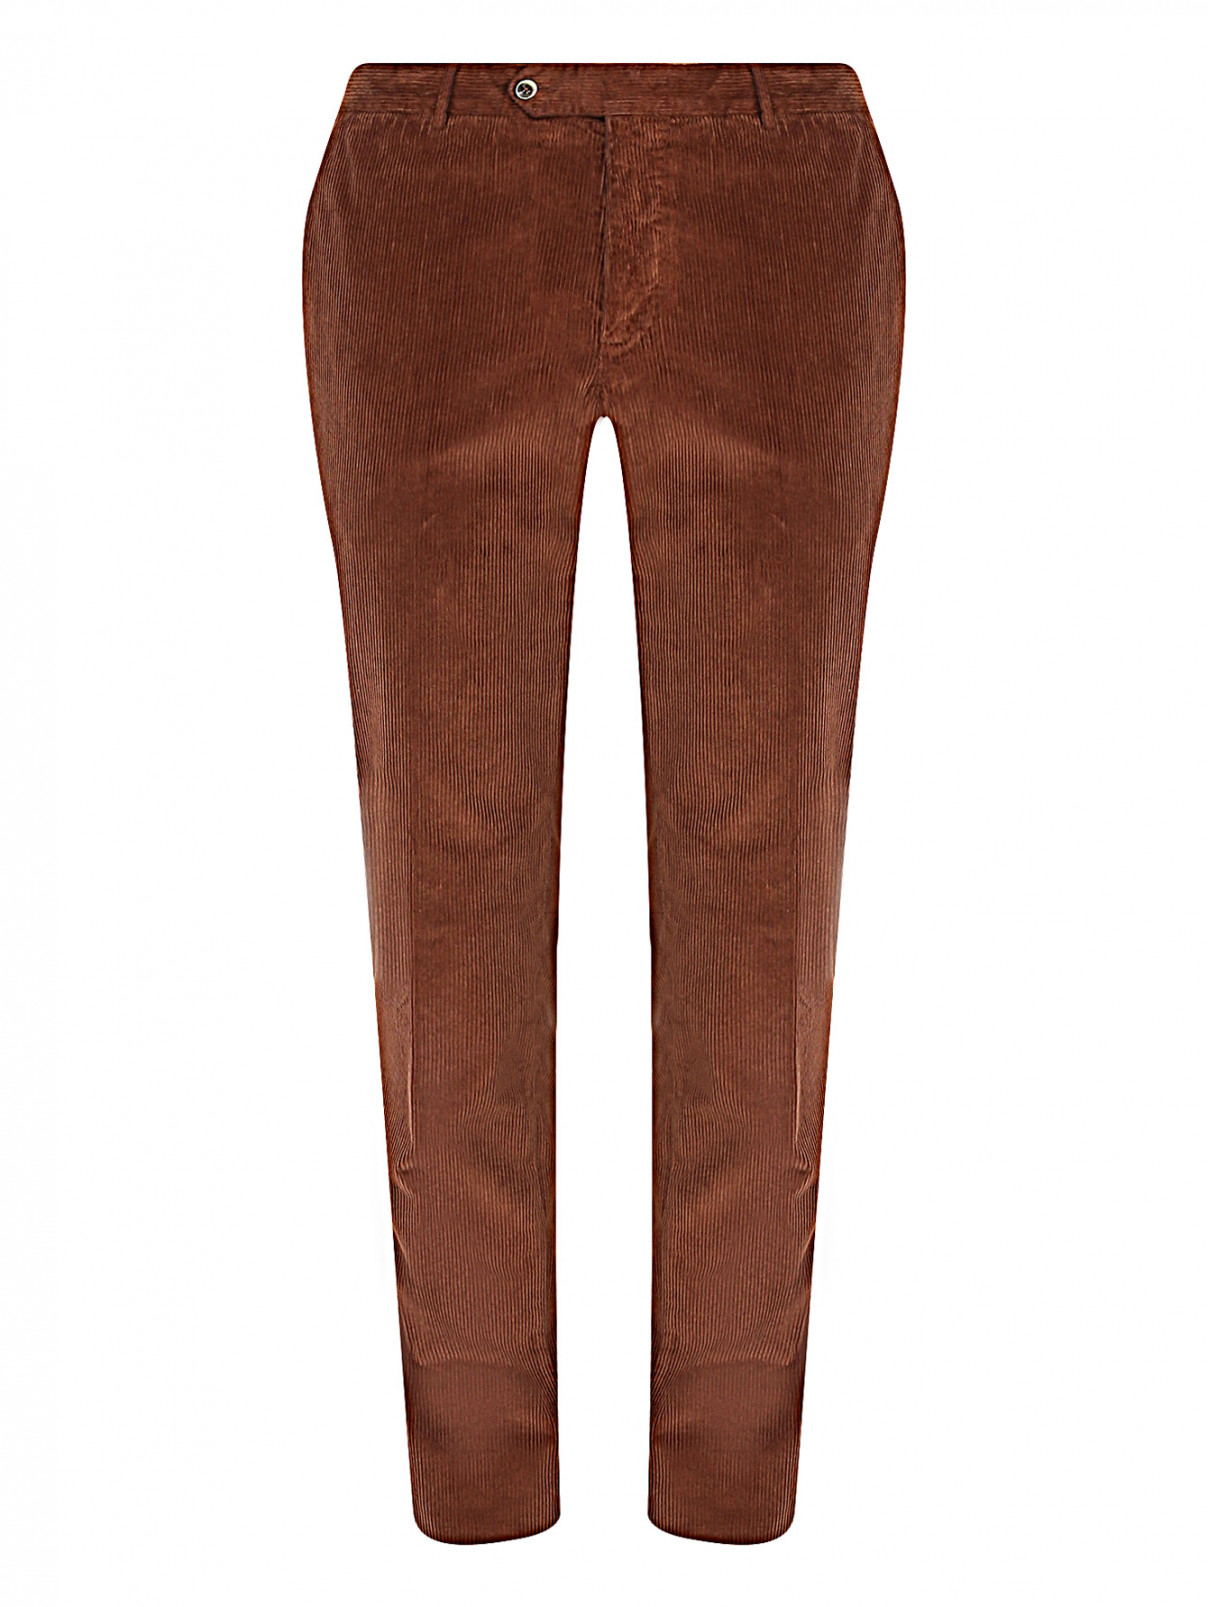 Вельветовые брюки с карманами PT Torino  –  Общий вид  – Цвет:  Коричневый